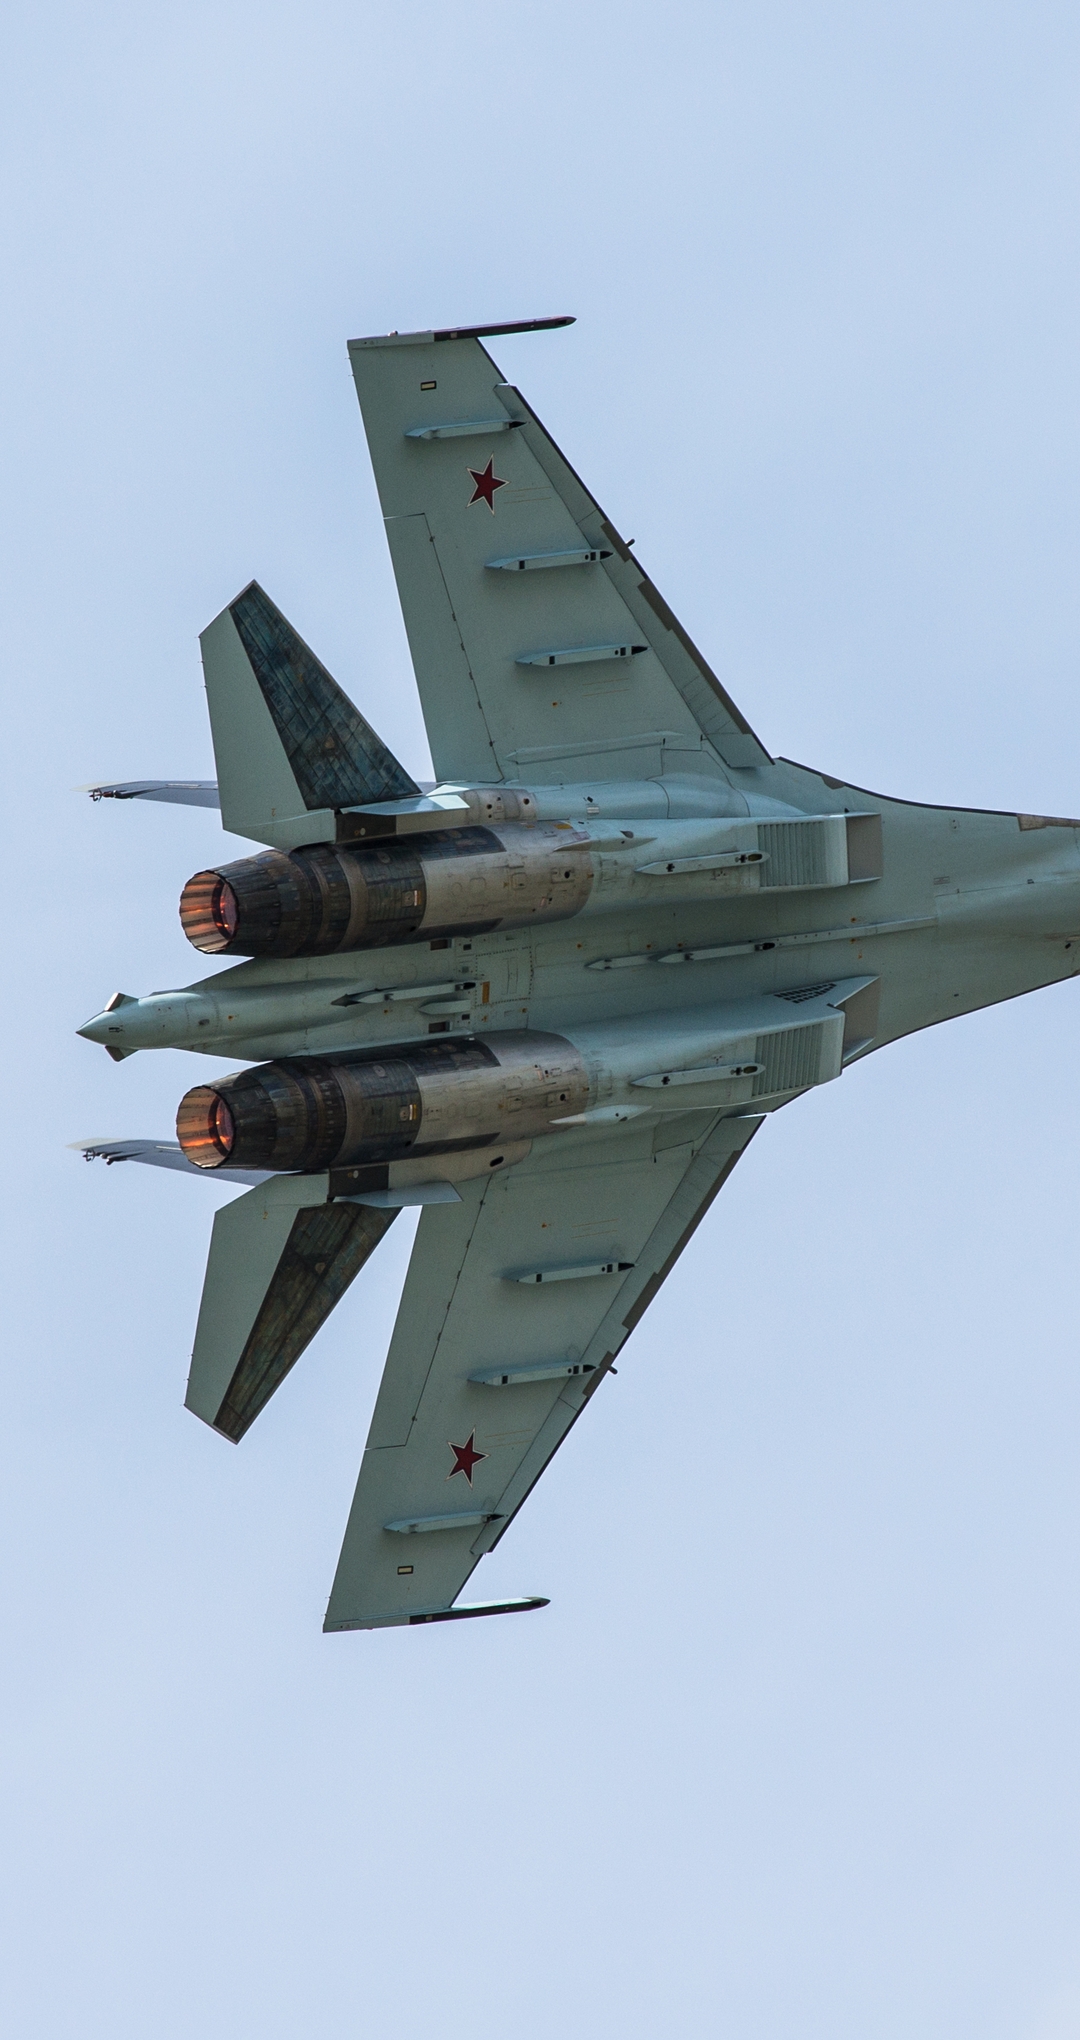 Картинка: Су-35, Су-27М/Т-10М, истребитель, в воздухе, советский